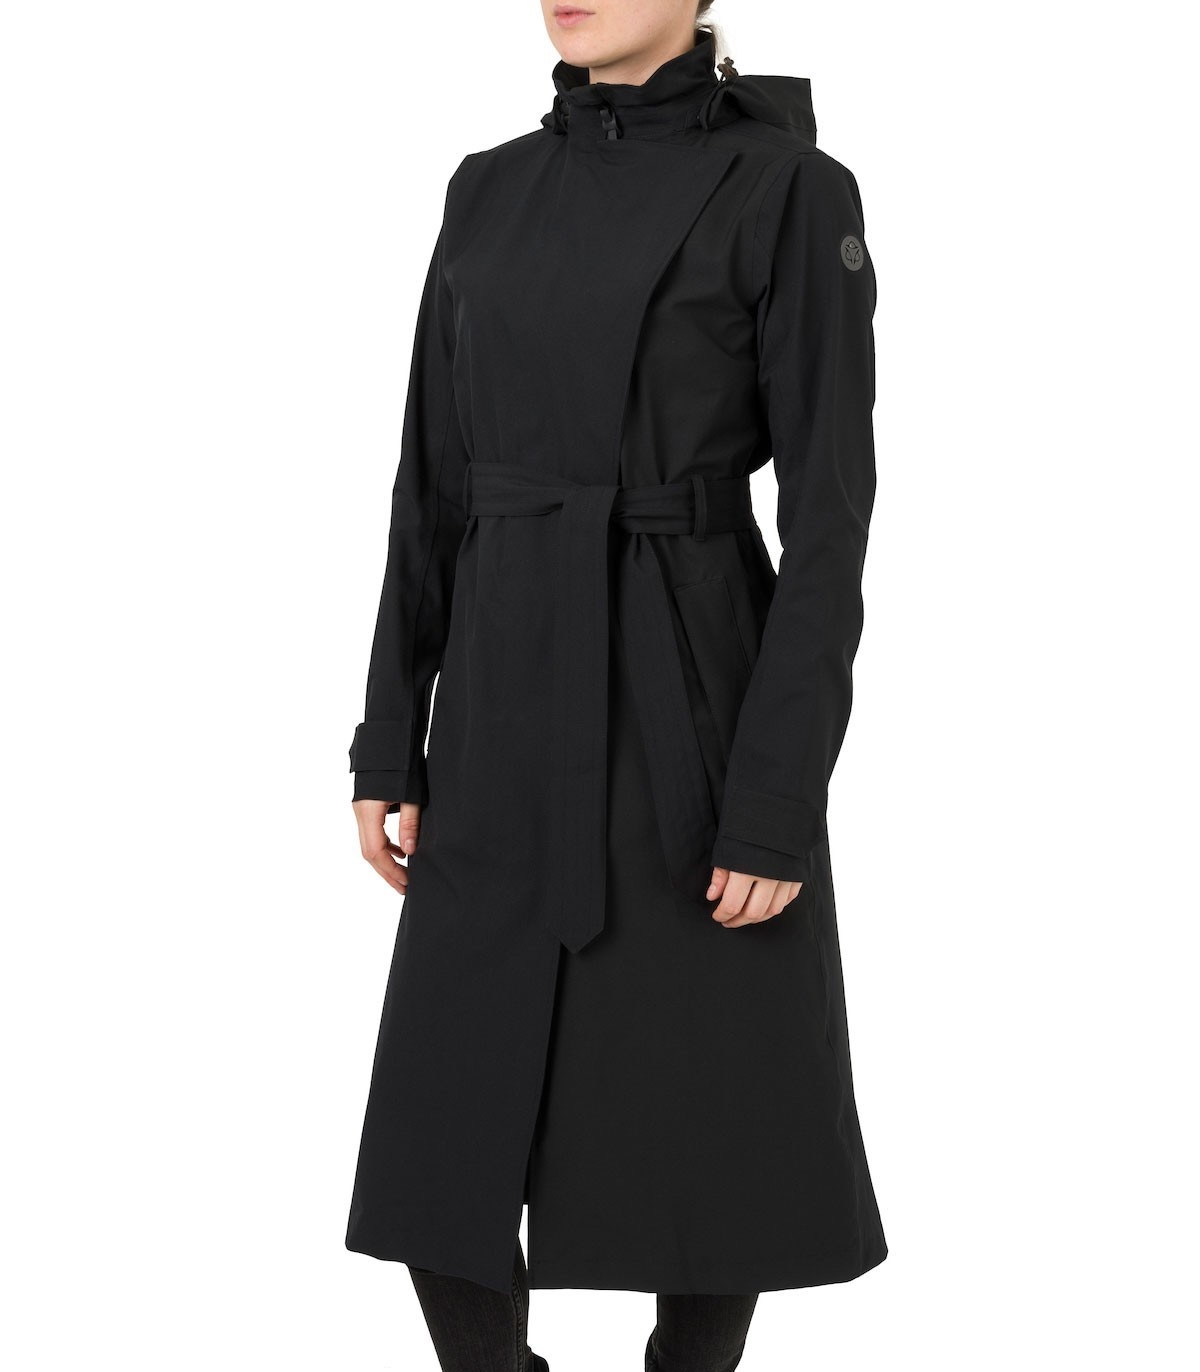 Agu Urban outdoor Trenchcoat Women zwart kopen - LoveforRain